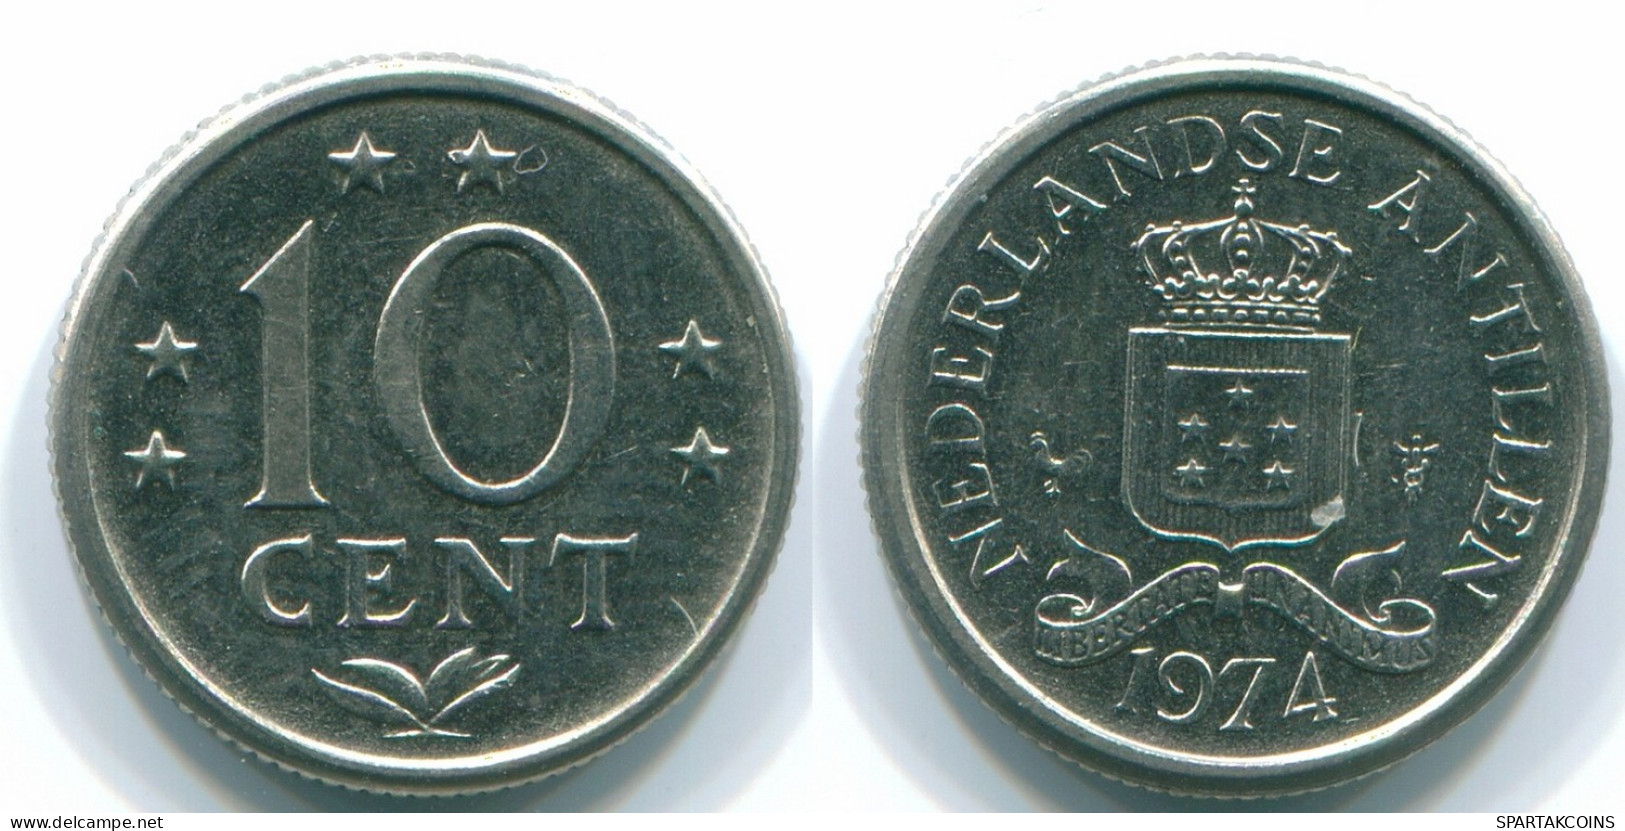 10 CENTS 1974 NIEDERLÄNDISCHE ANTILLEN Nickel Koloniale Münze #S13529.D.A - Antillas Neerlandesas